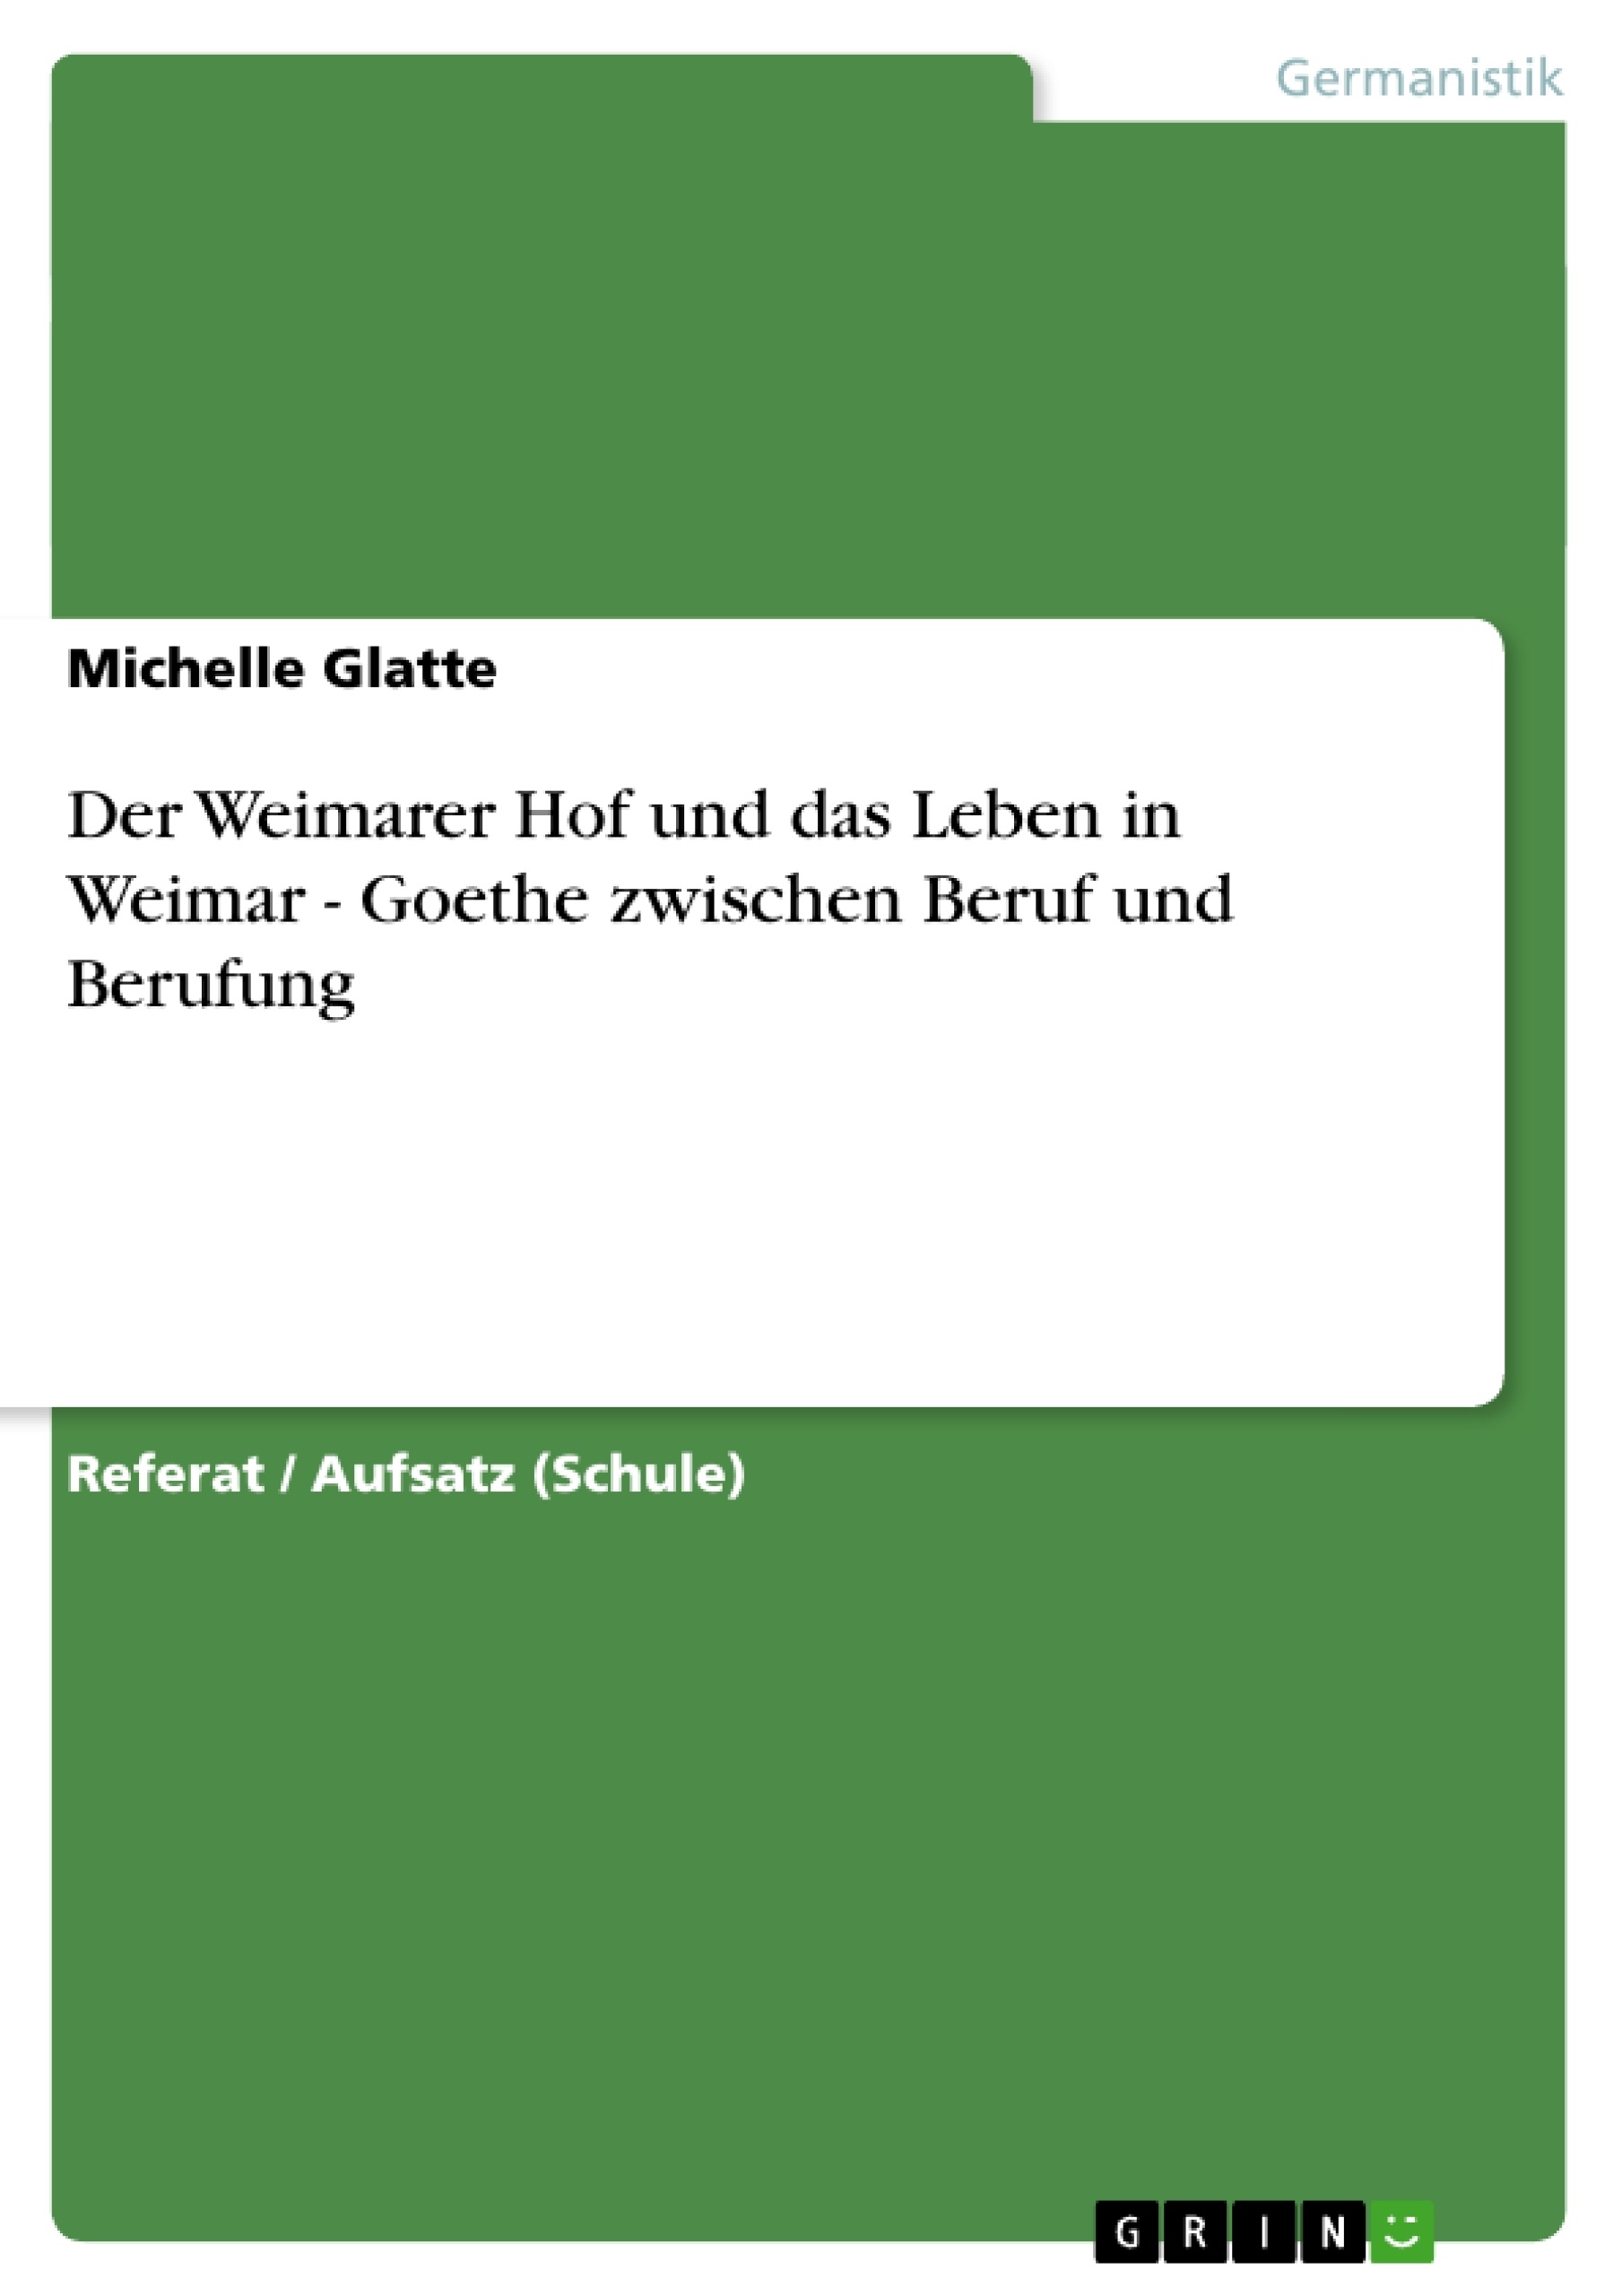 Titre: Der Weimarer Hof und das Leben in Weimar - Goethe zwischen Beruf und Berufung